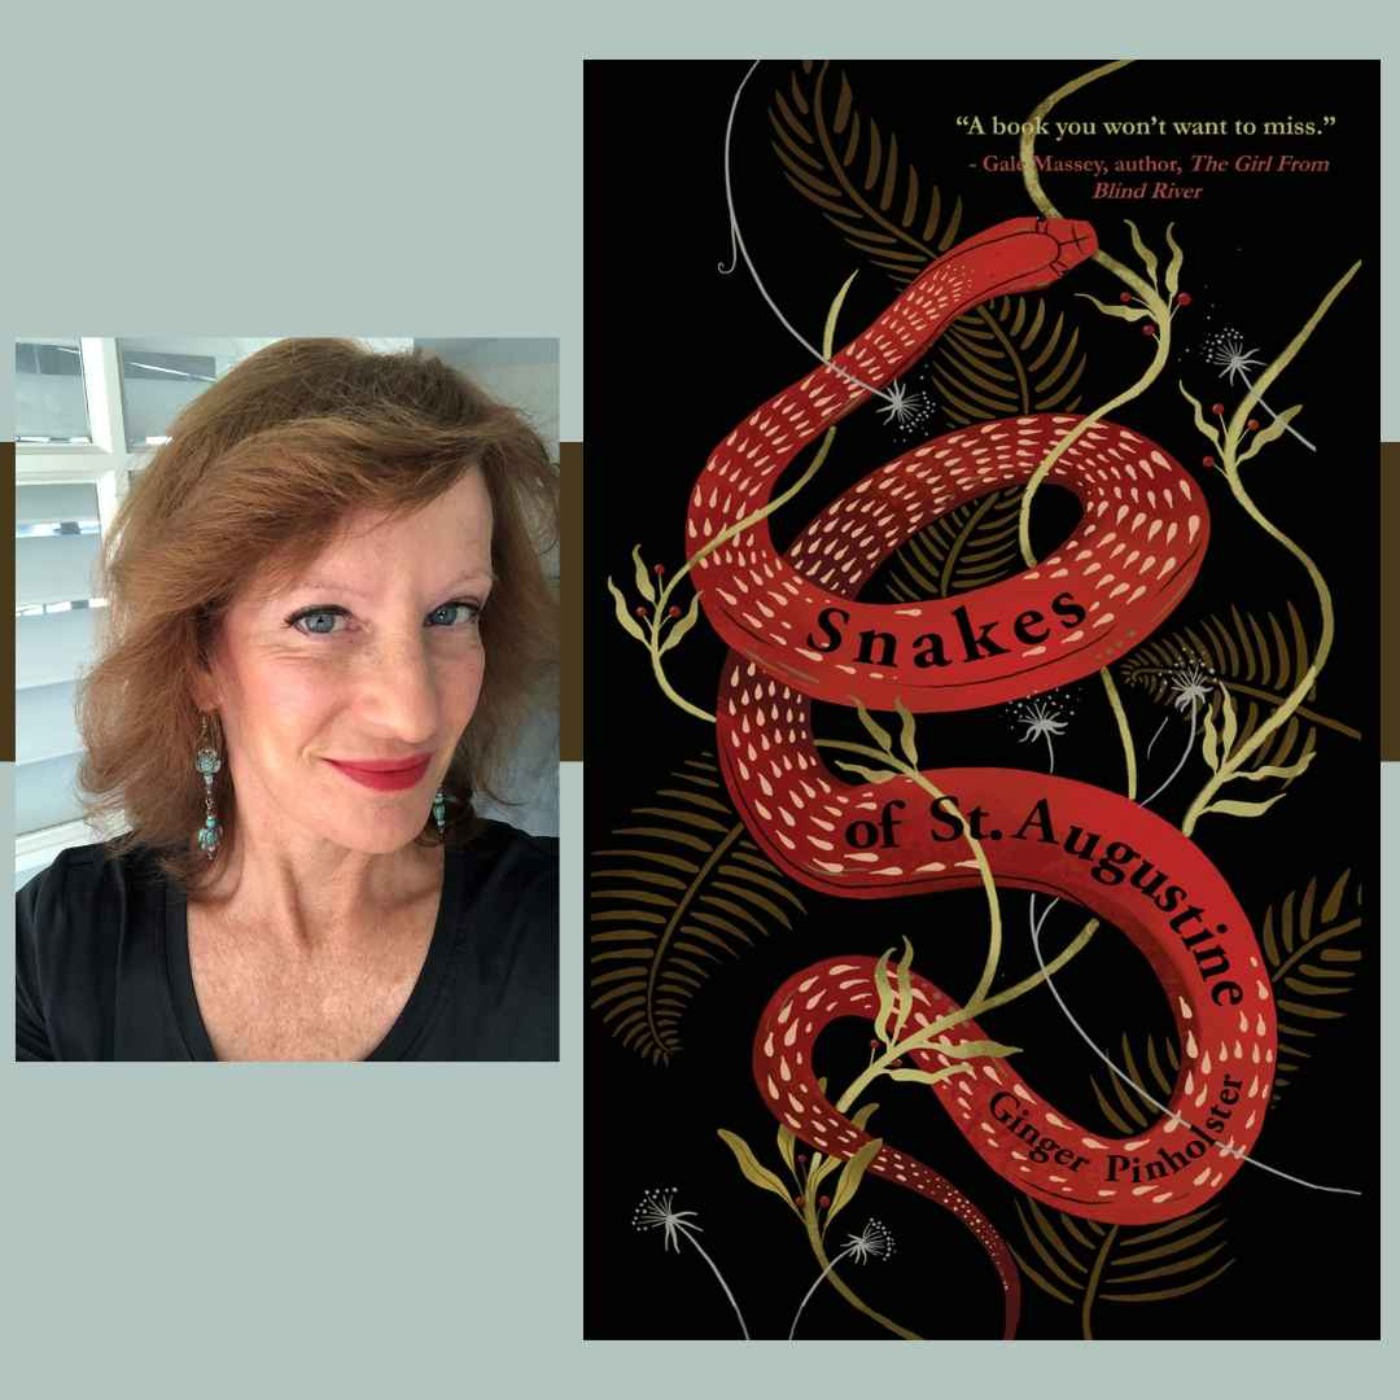 cover art for Author Ginger Pinholster - Snakes of St. Augustine